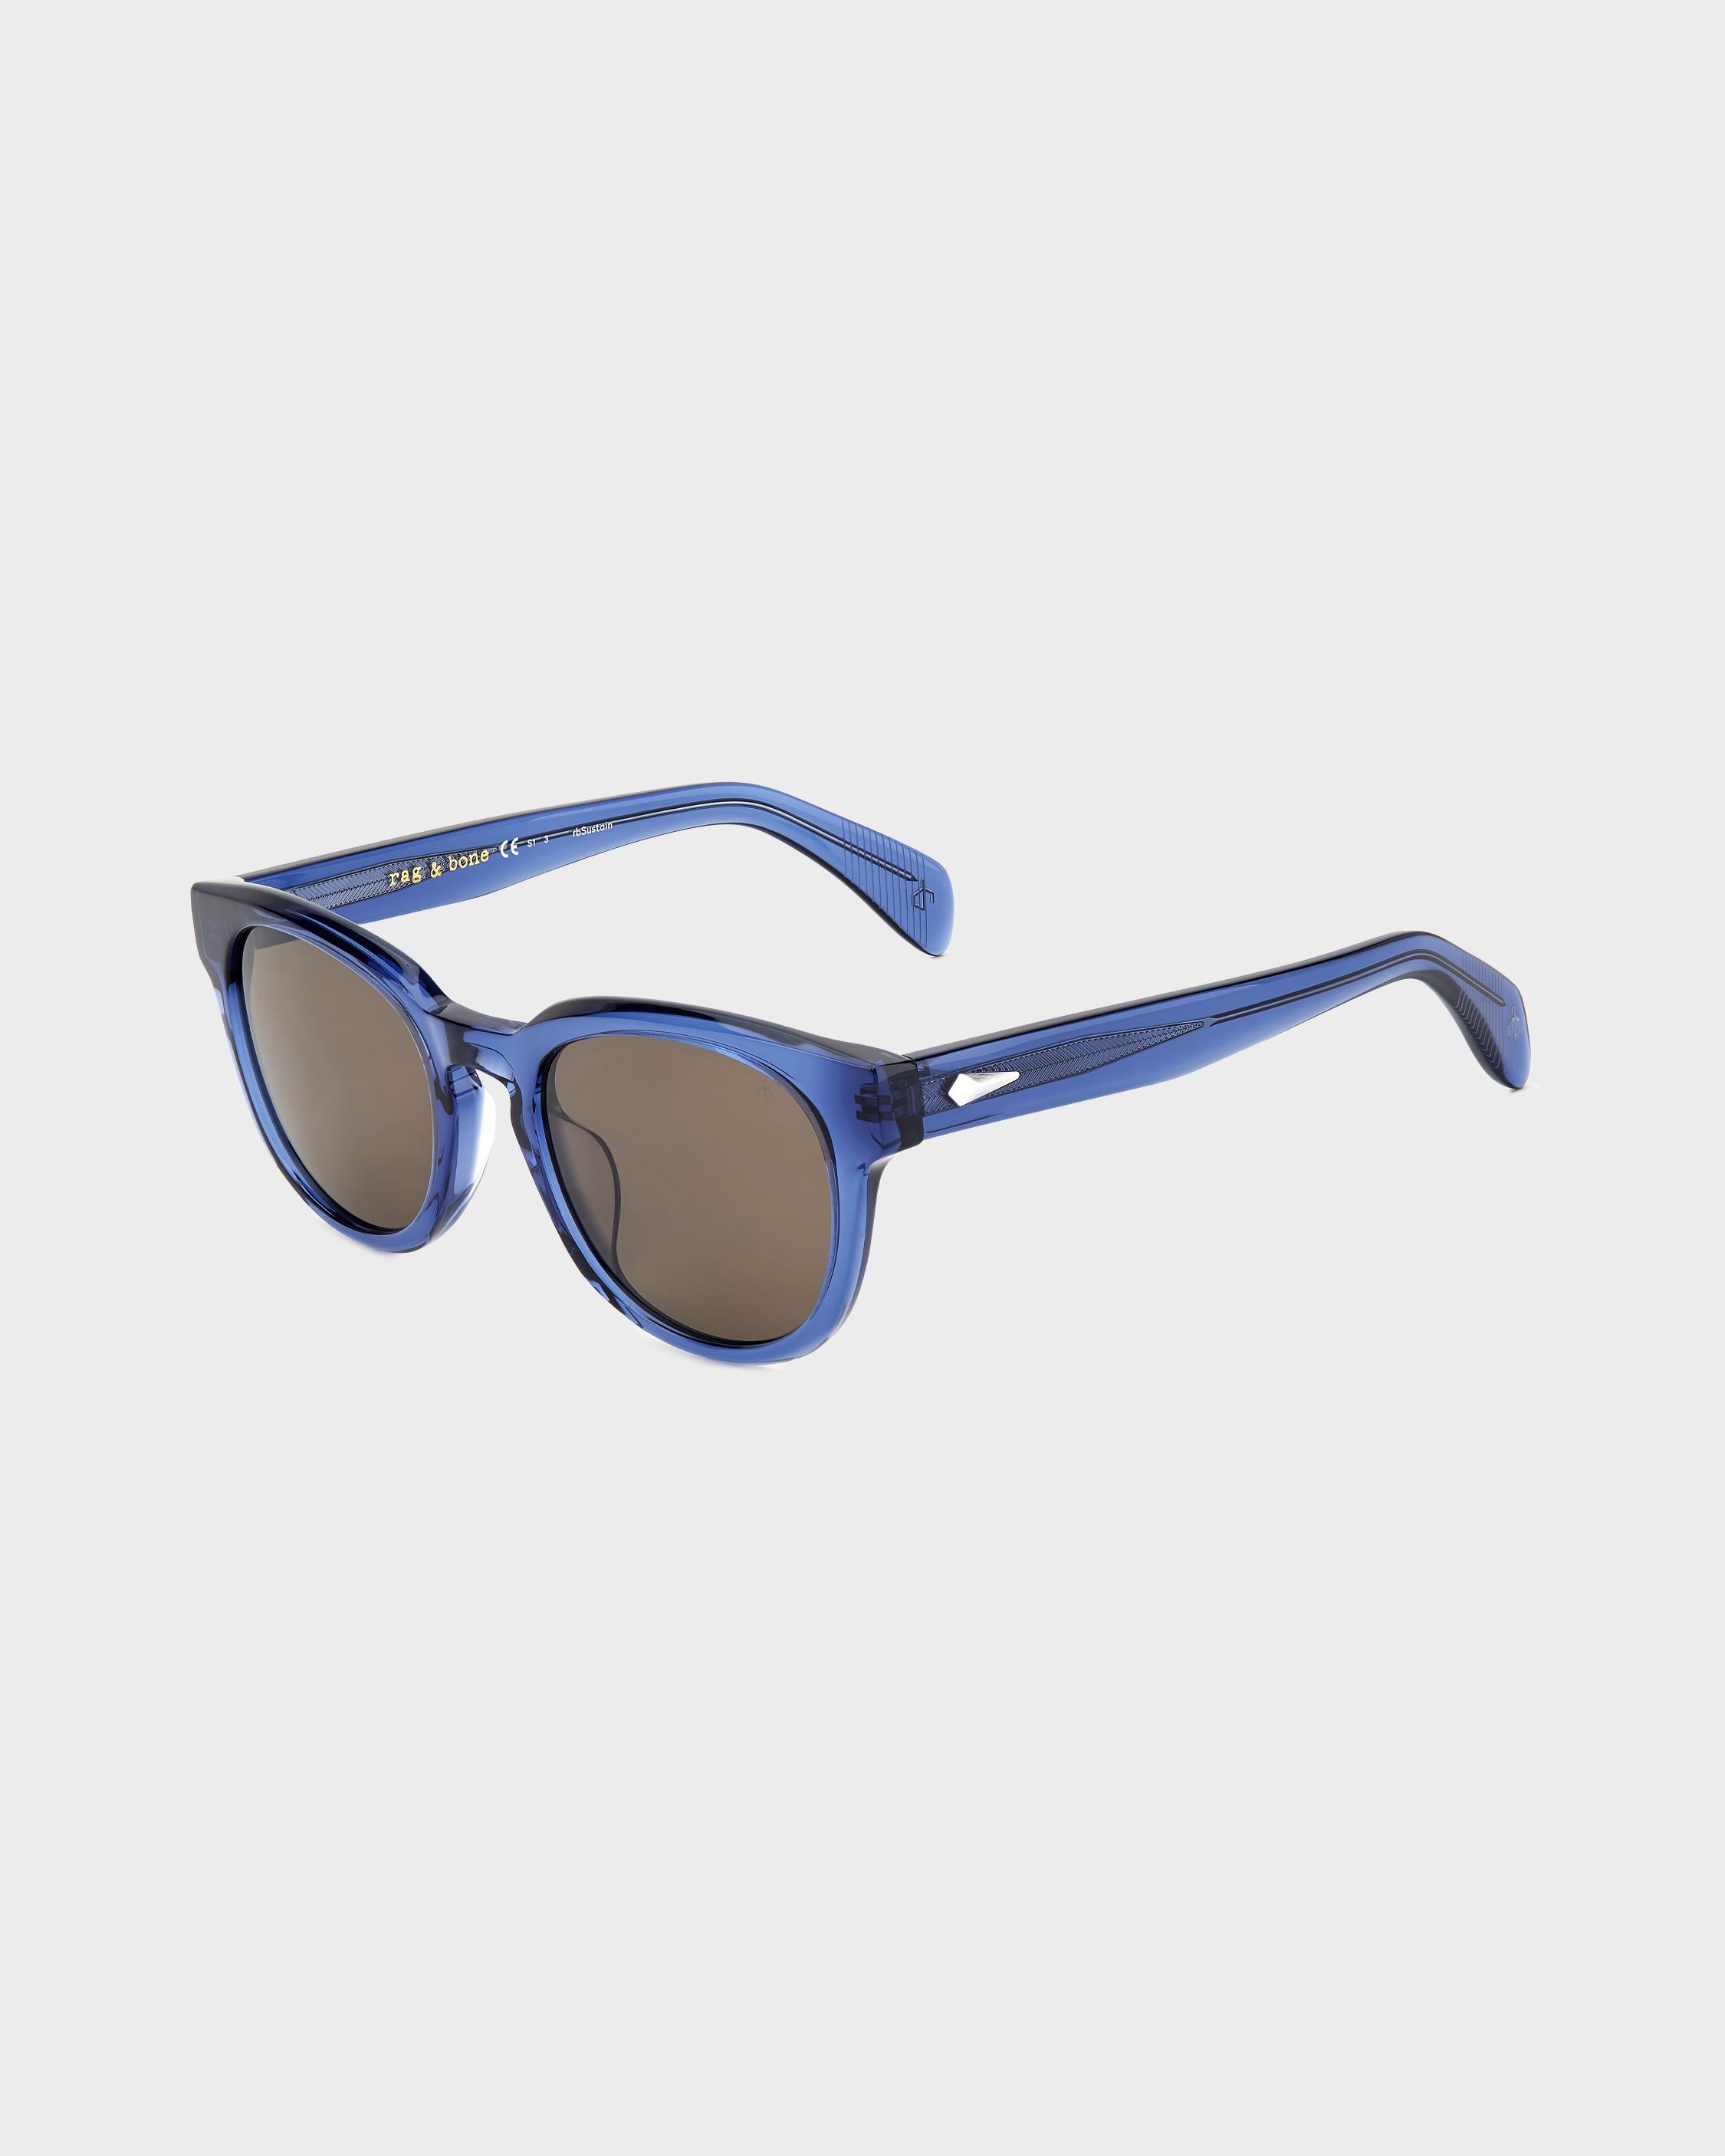 Slayton
Oval Sunglasses - 1